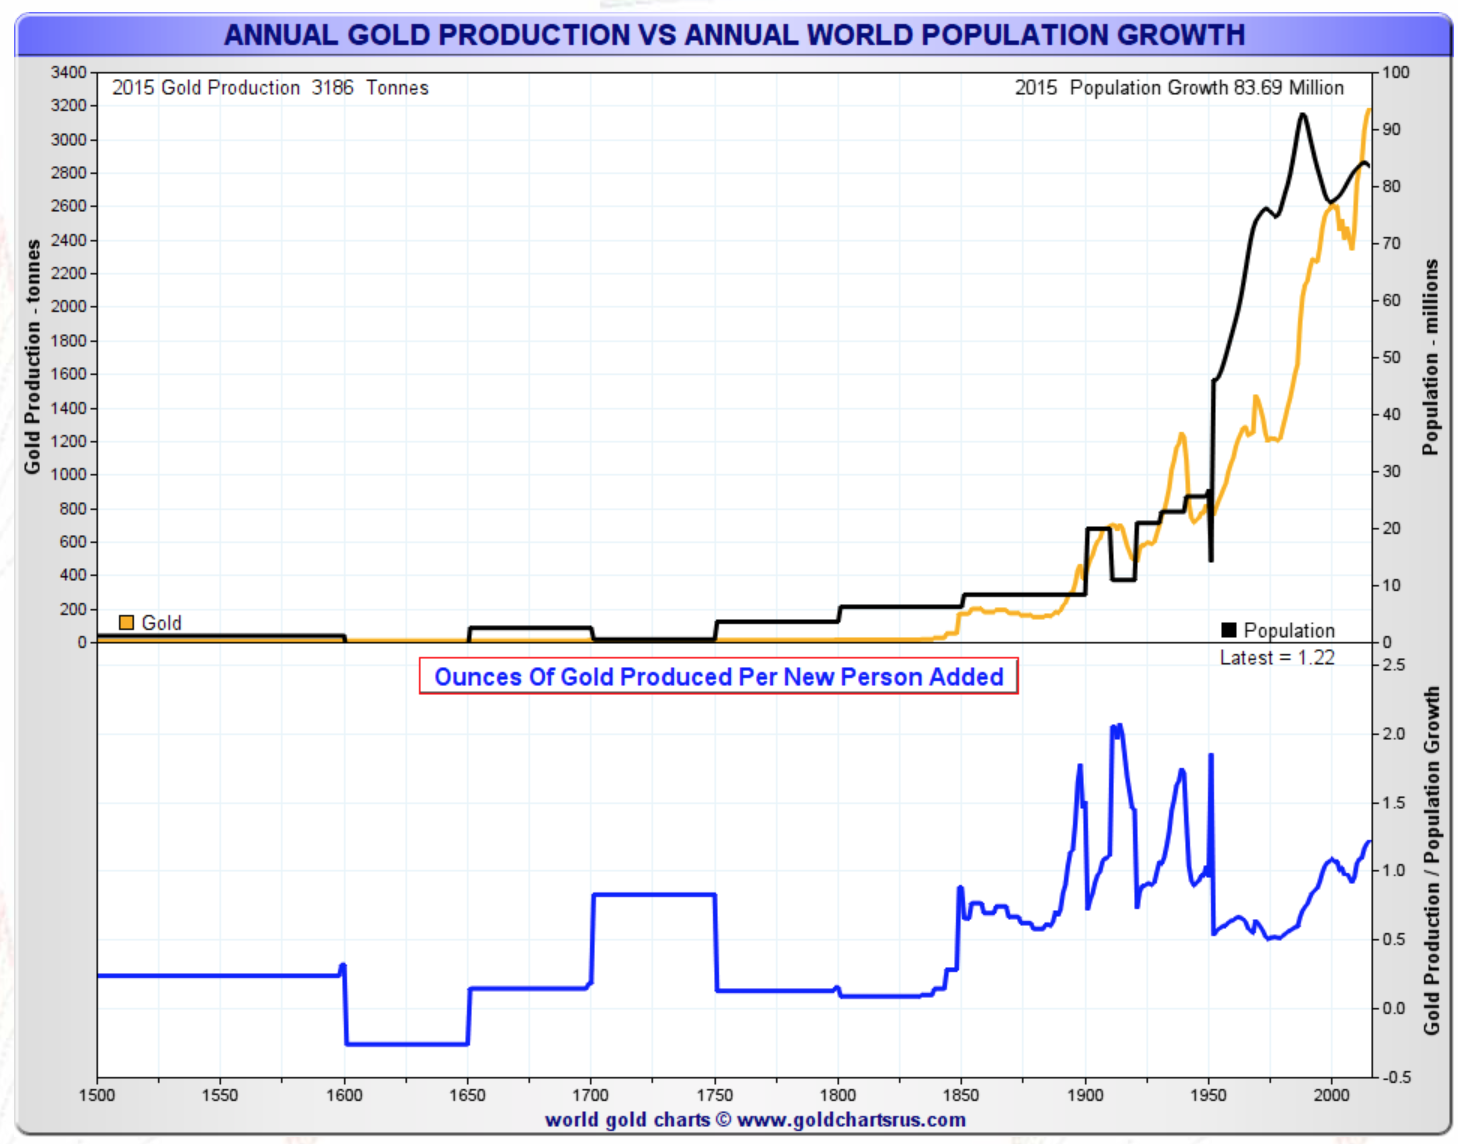 Croissance de la production d'or annuelle et croissance annuelle de la population mondiale